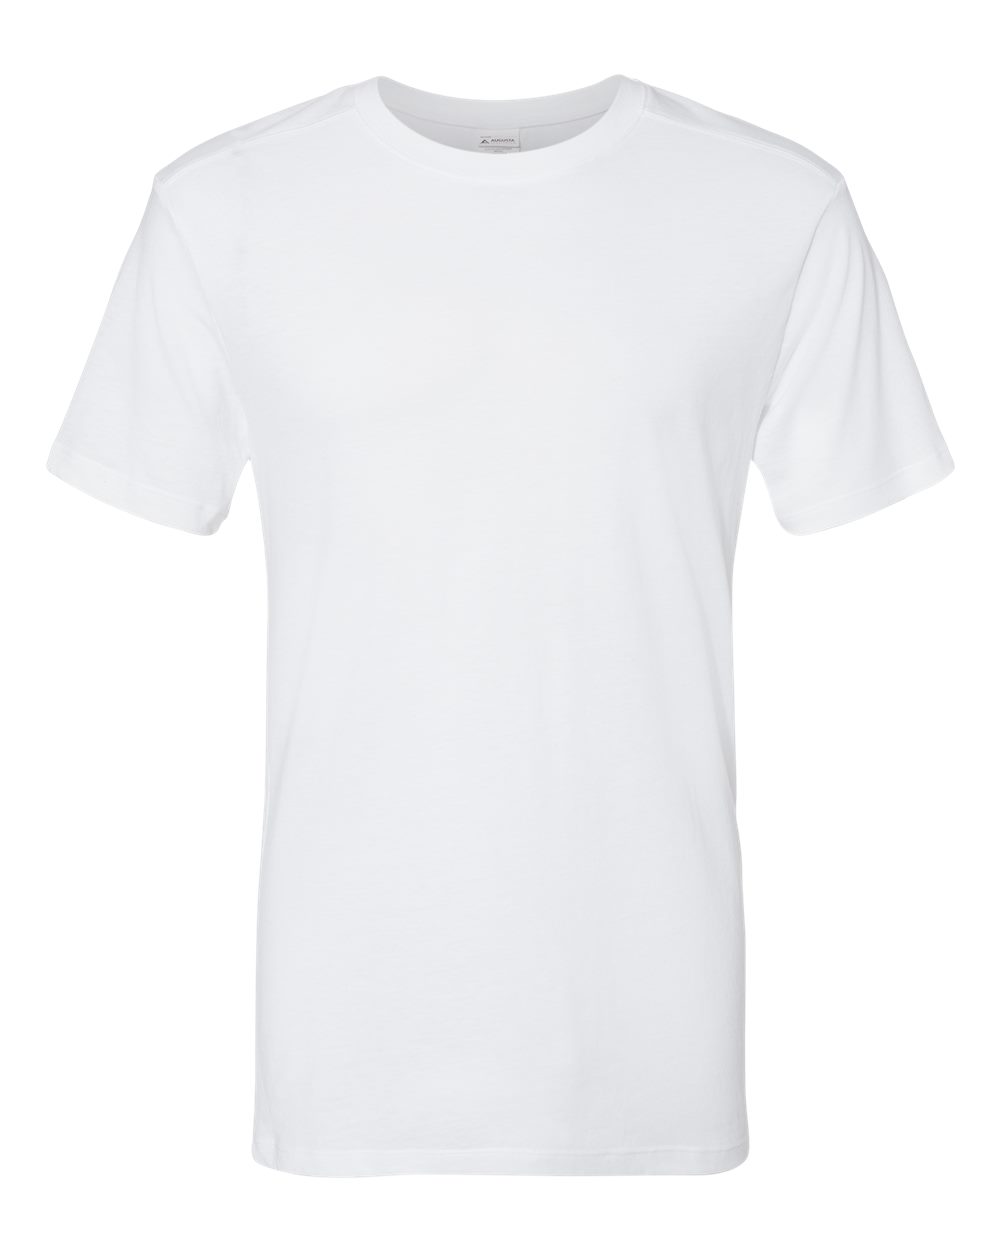 Triblend Short Sleeve T-Shirt-